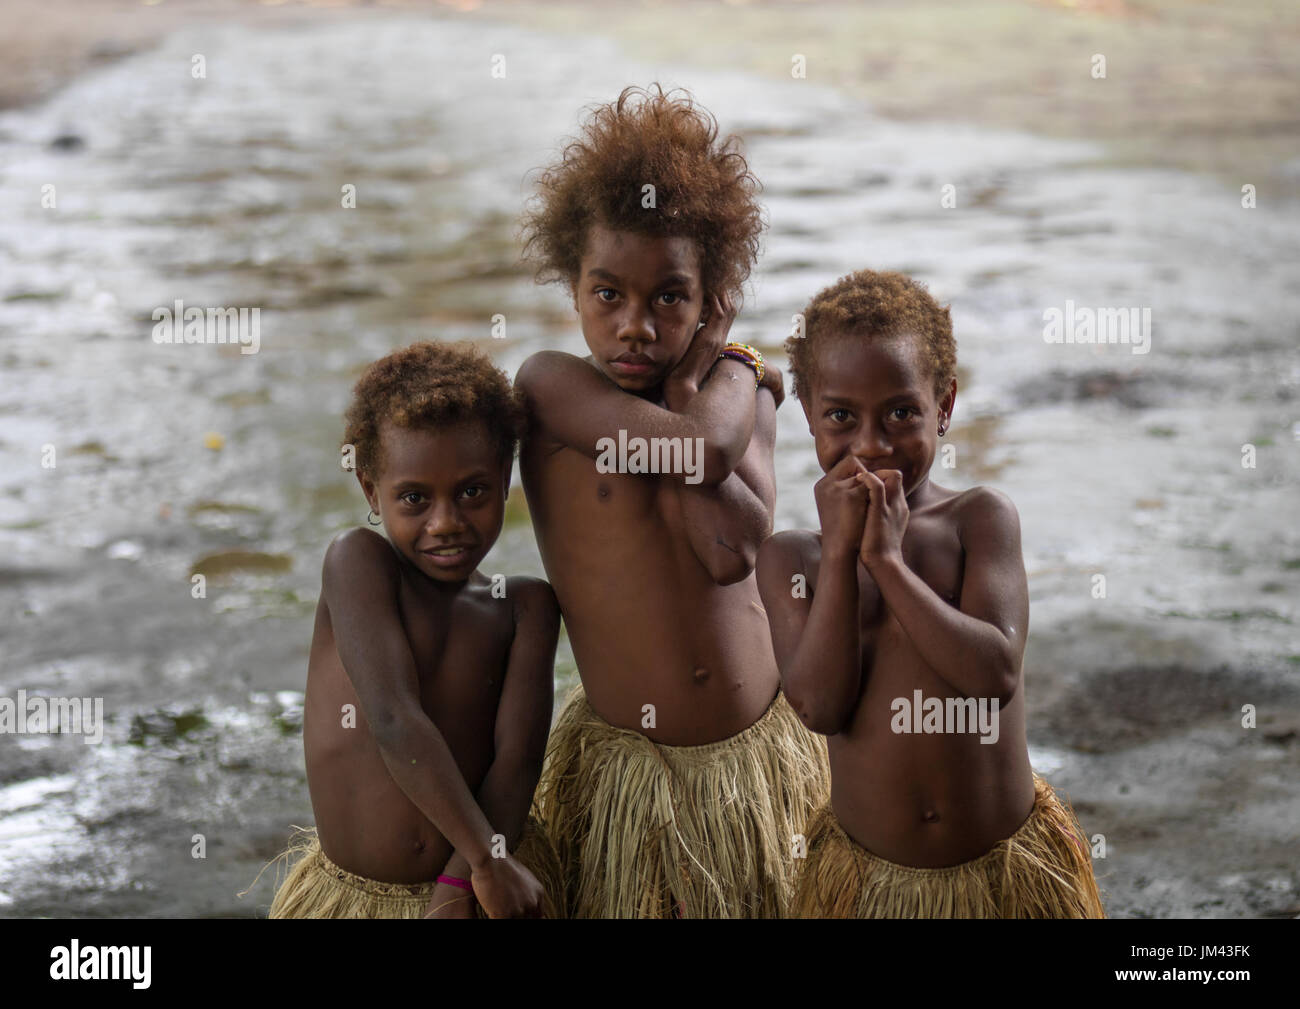 Three girls in traditional grass skirts, Tanna island, Yakel, Vanuatu Stock Photo